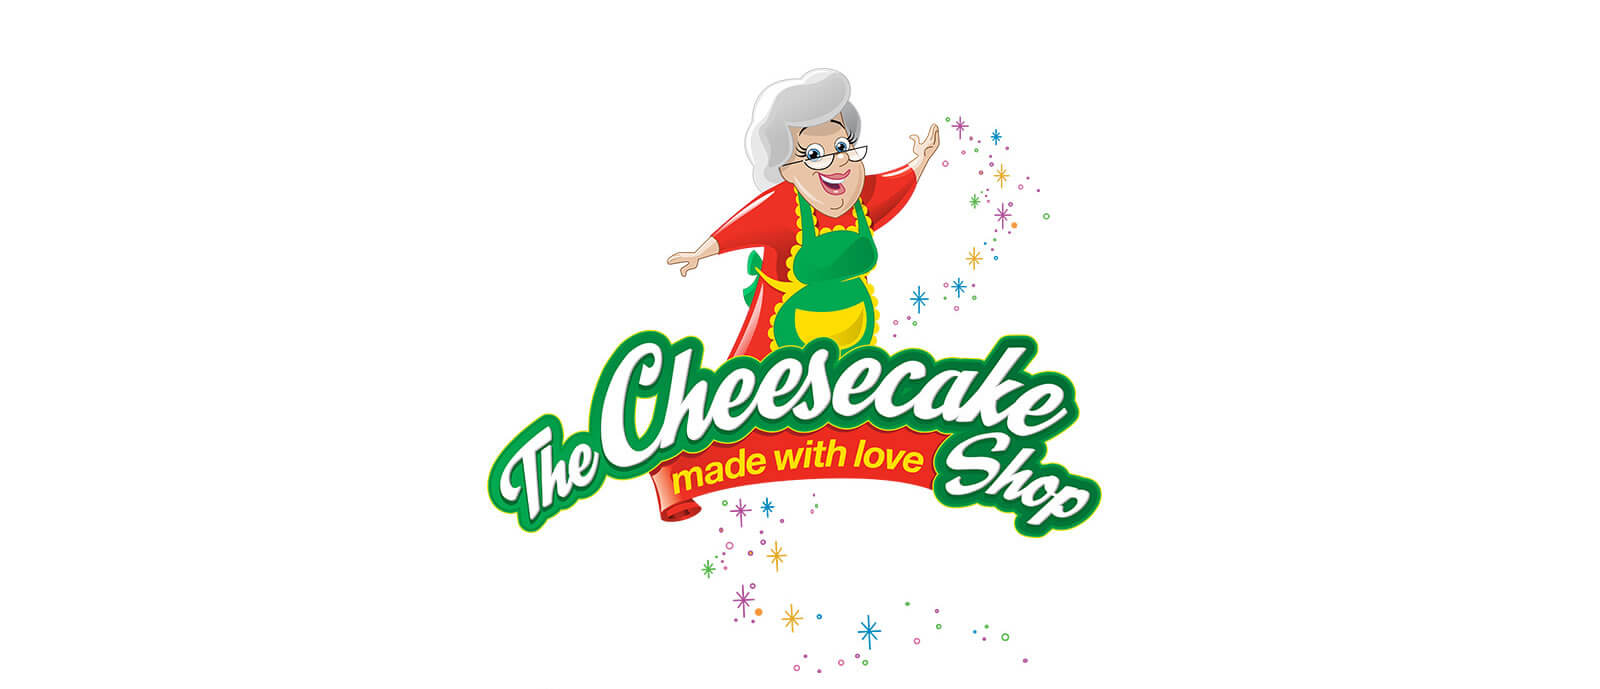 The Cheesecake Shop Logo